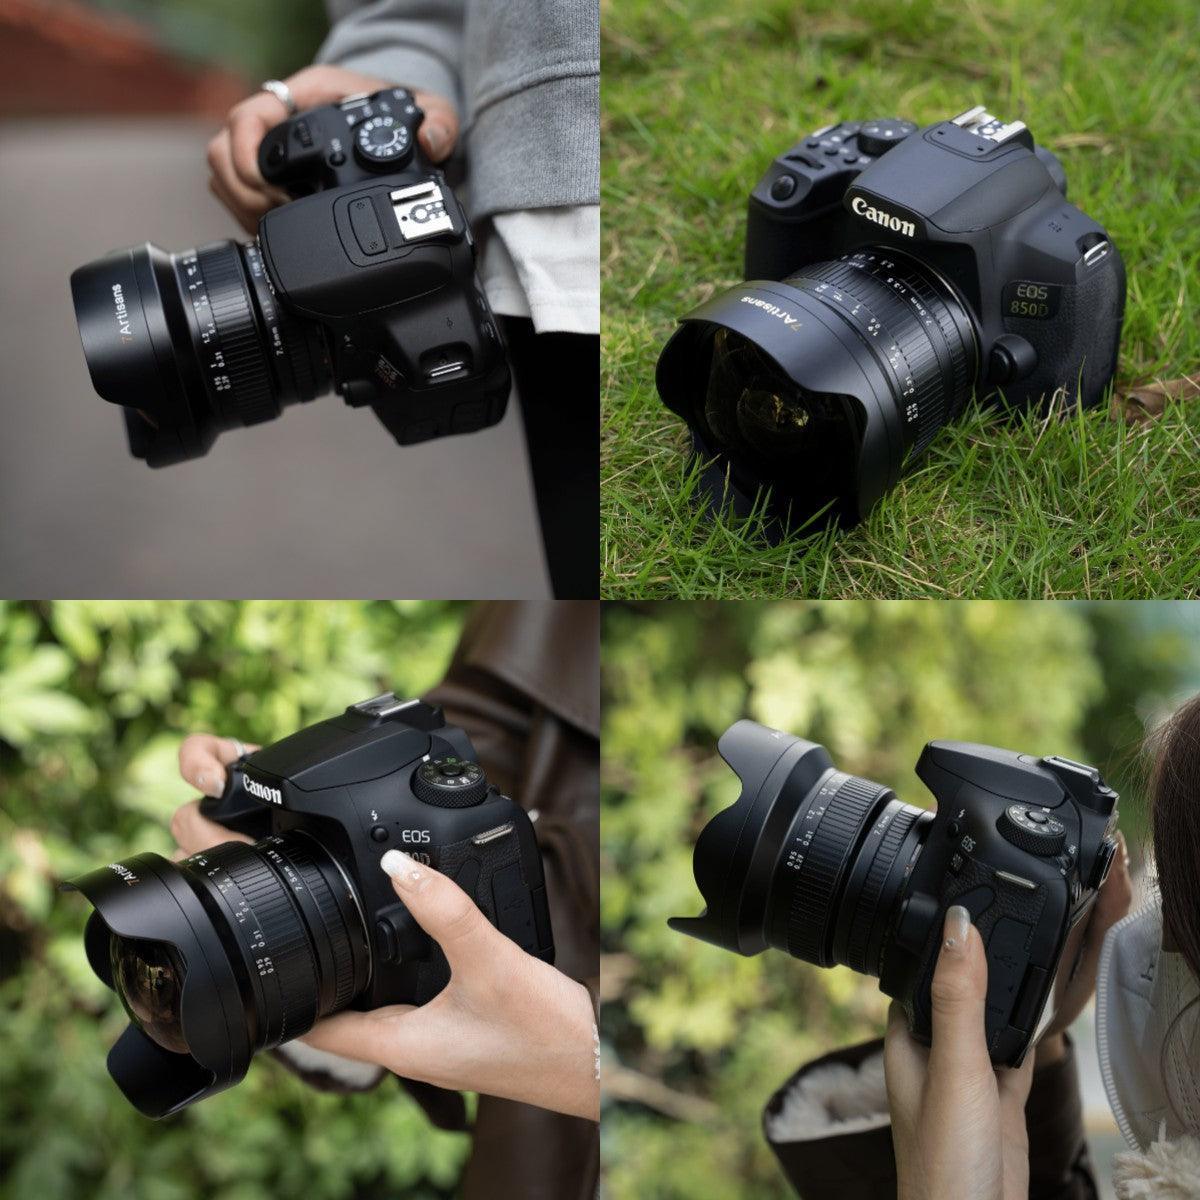 7Artisans 7.5mm F3.5 ultra wide-angle APS-C DSLR lens for EF